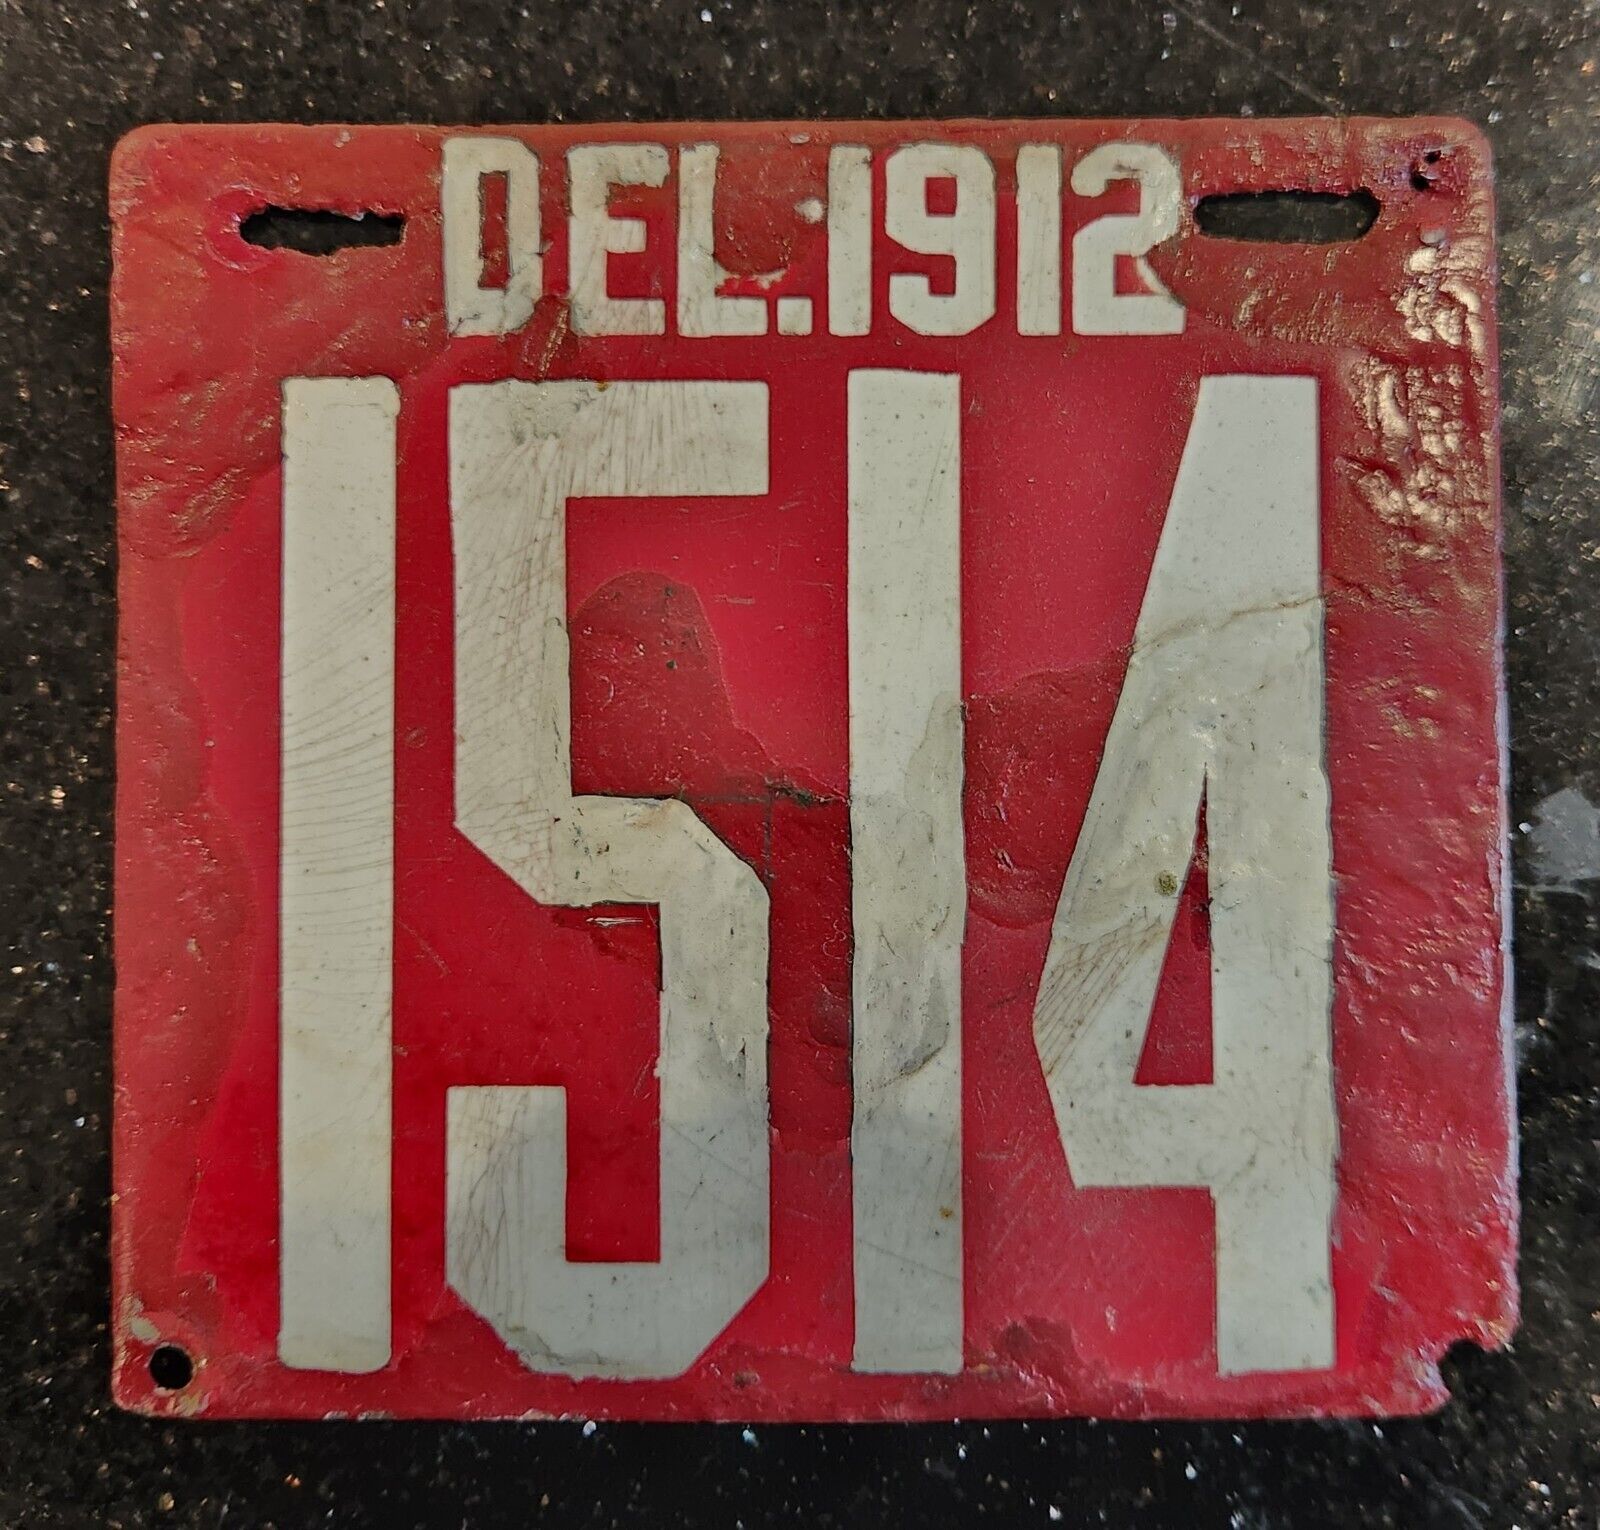 1912 Delaware DEL DE Porcelain License Plate Car Tag Vehicle Registration Auto